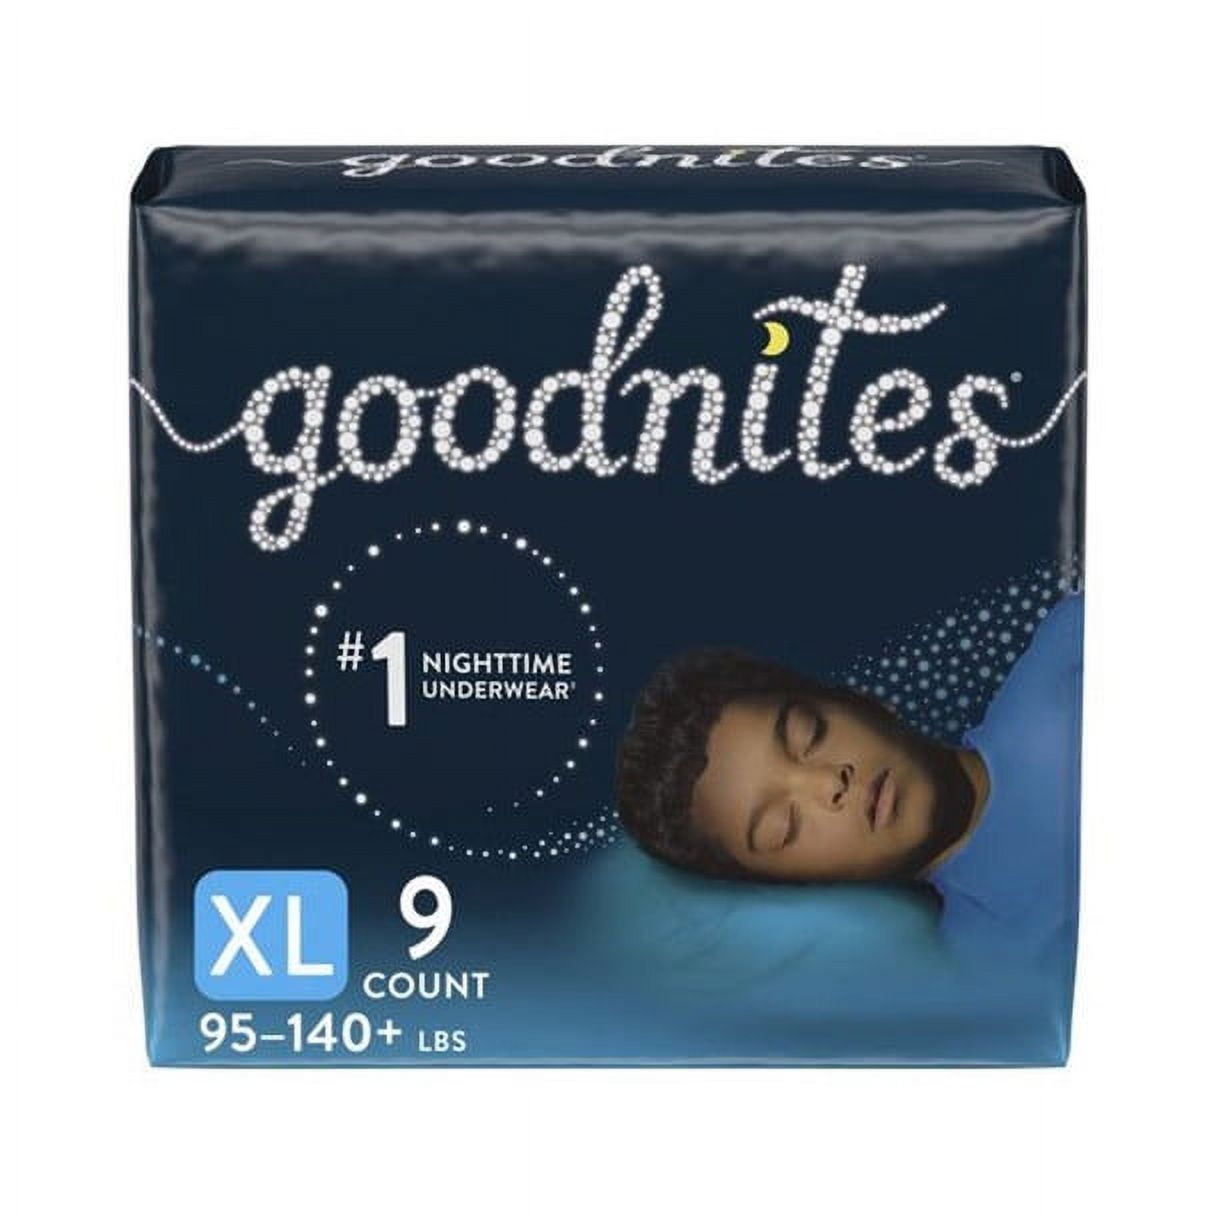 Goodnites Boys' Nighttime Bedwetting Underwear, Size XL (95-140+